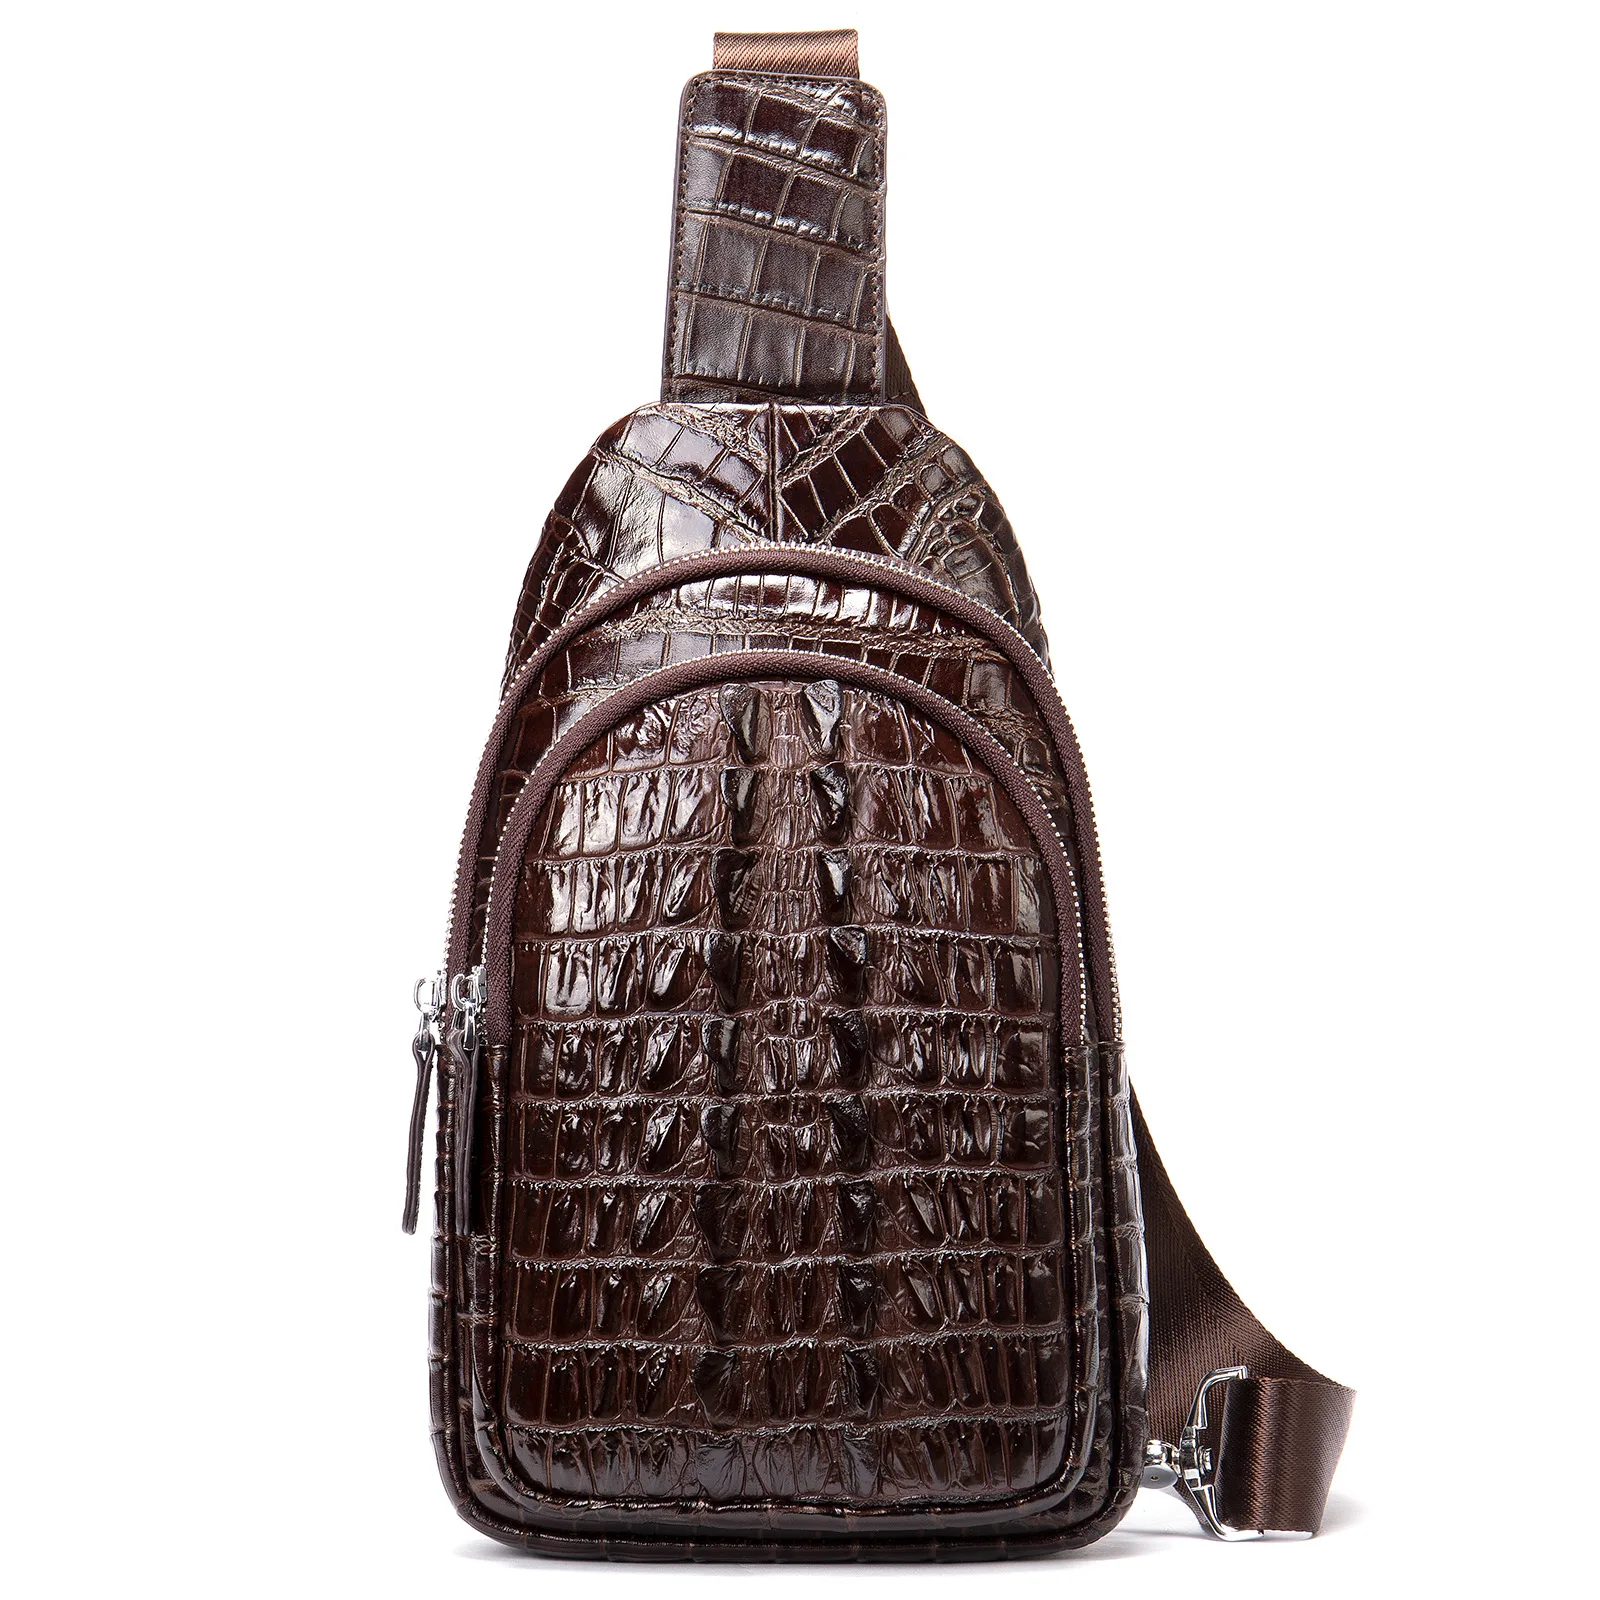 Мужская кожаная нагрудная сумка Легкий Роскошный дизайн с рисунком крокодиловой кожи Хвостовой плавник Многофункциональная сумка через плечо - 5